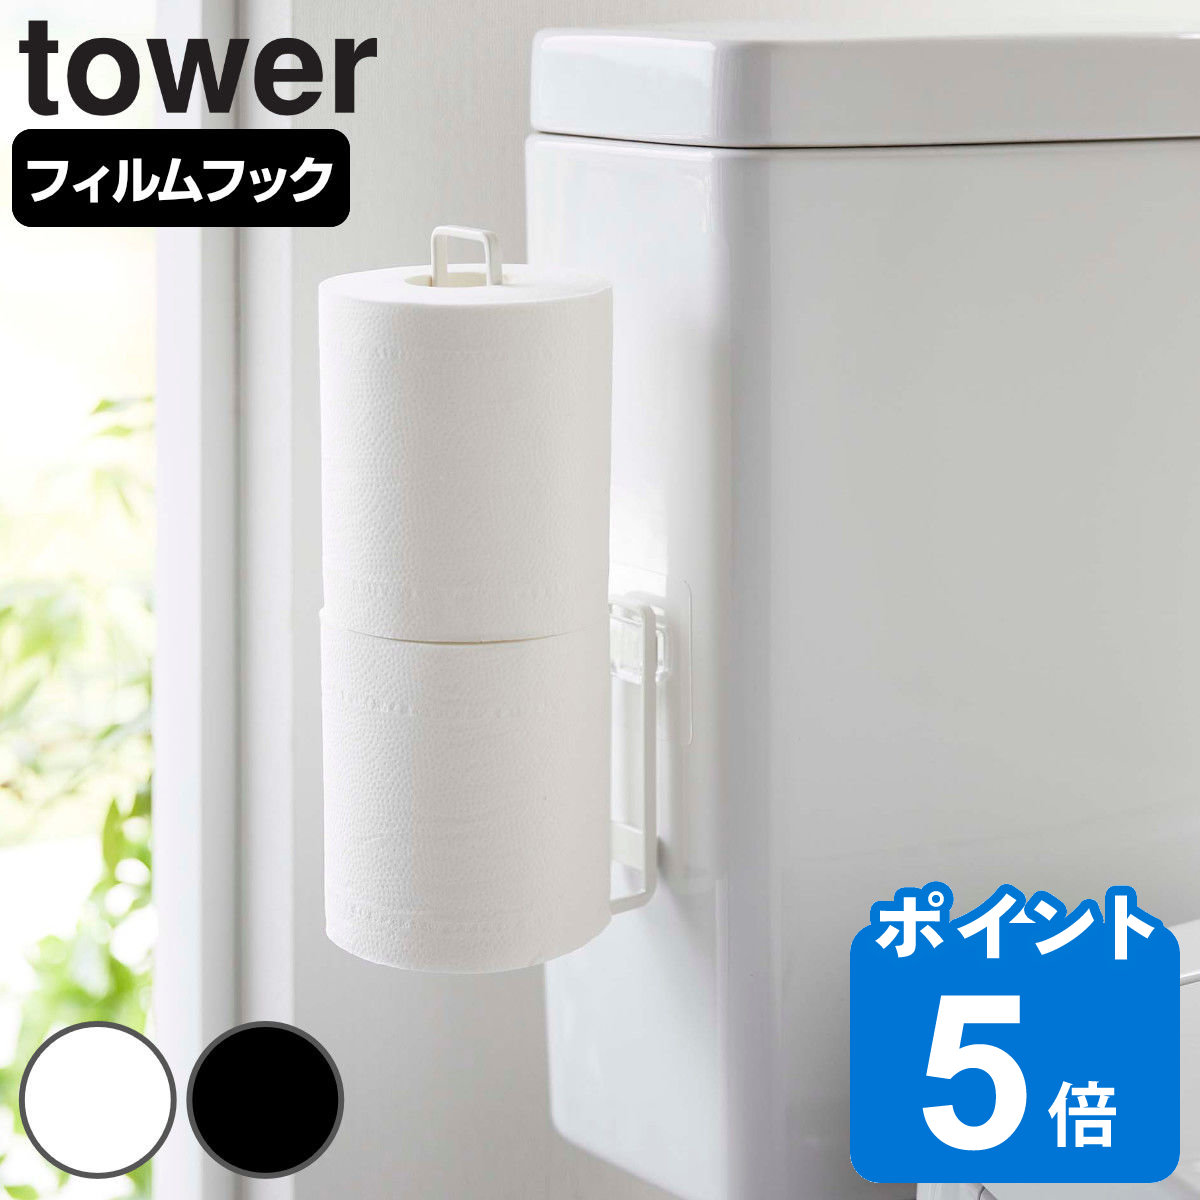 tower フィルムフック トイレットペーパーホルダー タワー （ 山崎実業 タワーシリーズ トイレットペーパー 収納 吸着 貼ってはがせる ト